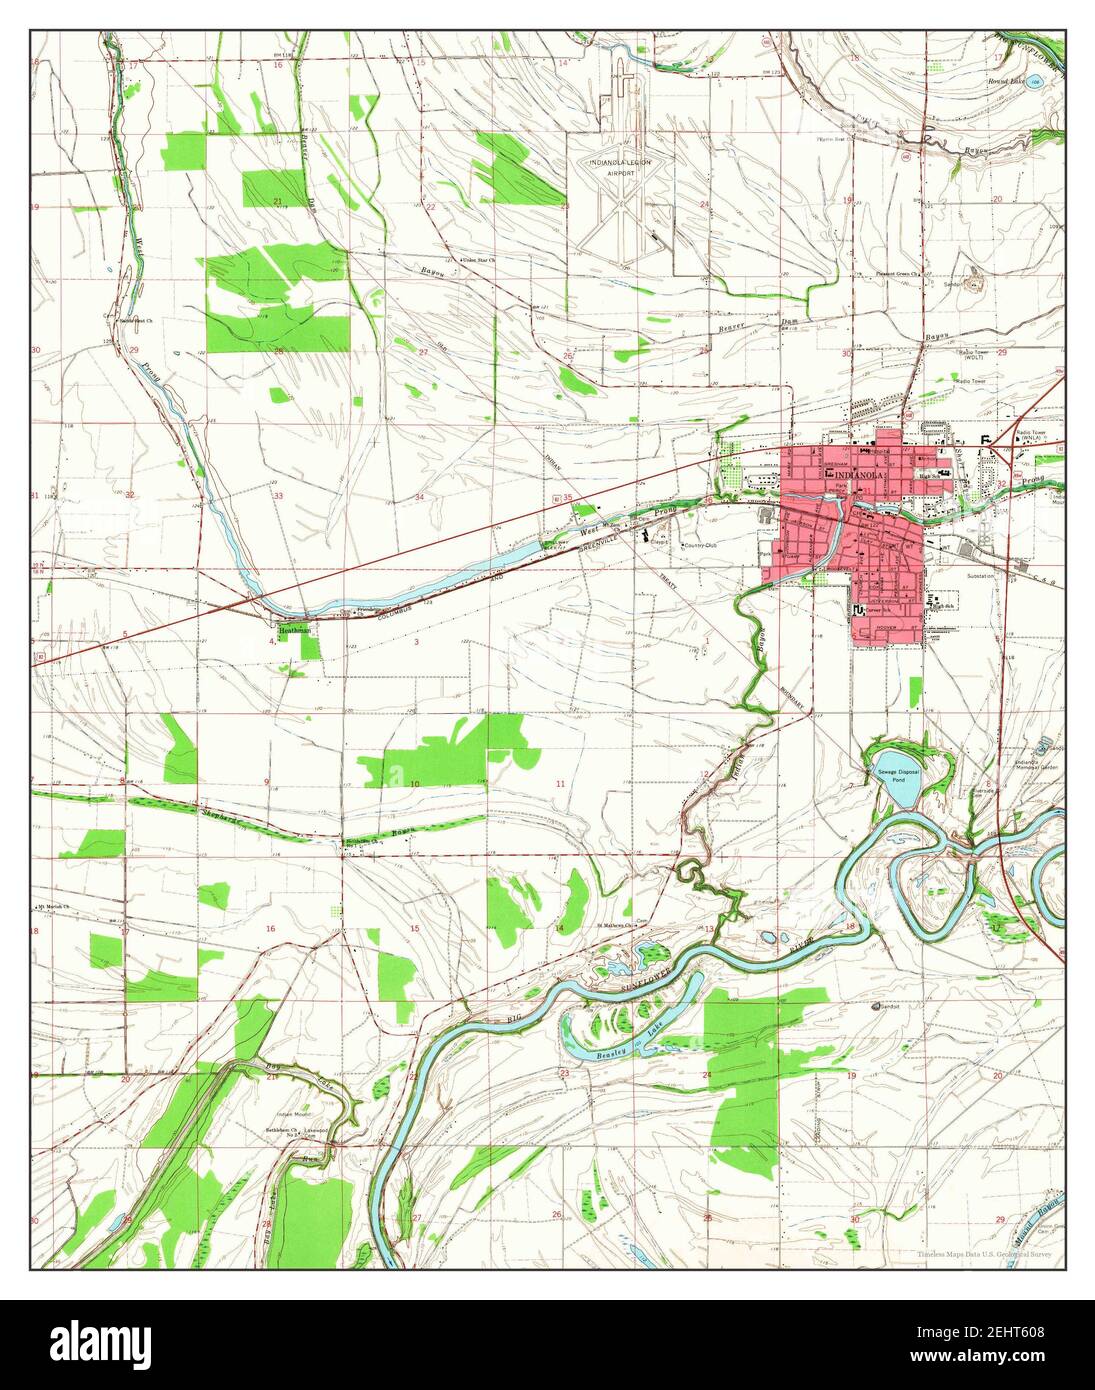 Indianola, Mississippi, Karte 1965, 1:24000, Vereinigte Staaten von Amerika von Timeless Maps, Daten U.S. Geological Survey Stockfoto